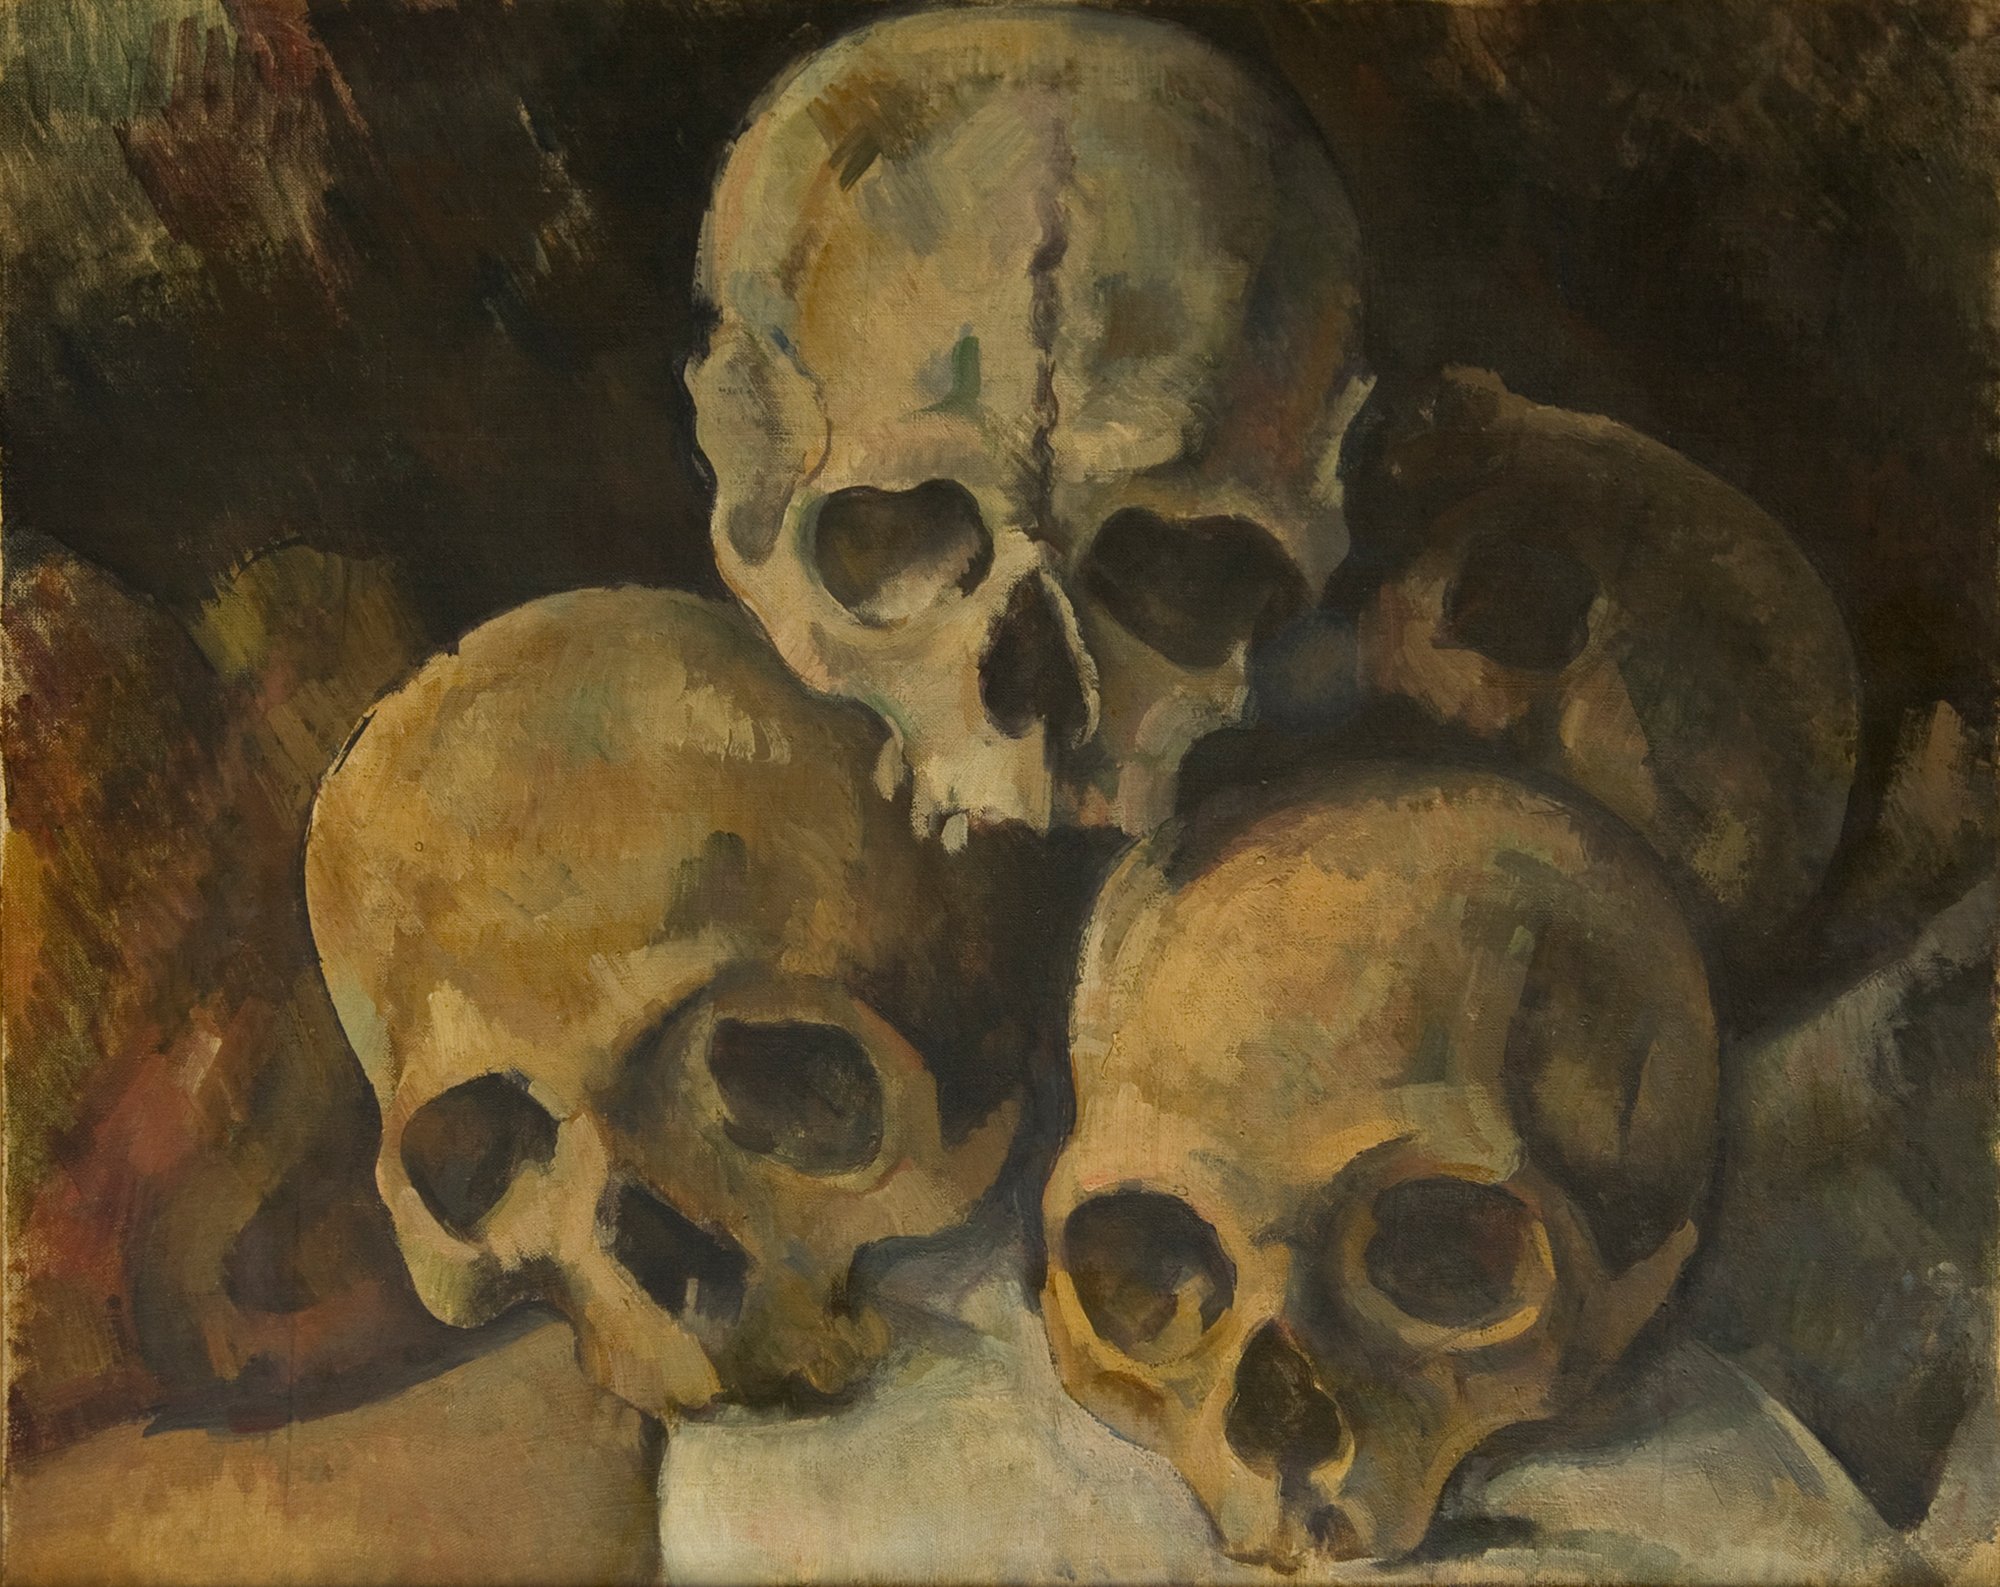 Das Cézanne Gemälde zeigt Schädel, die zu einer Pyramide aufgebaut wurden.